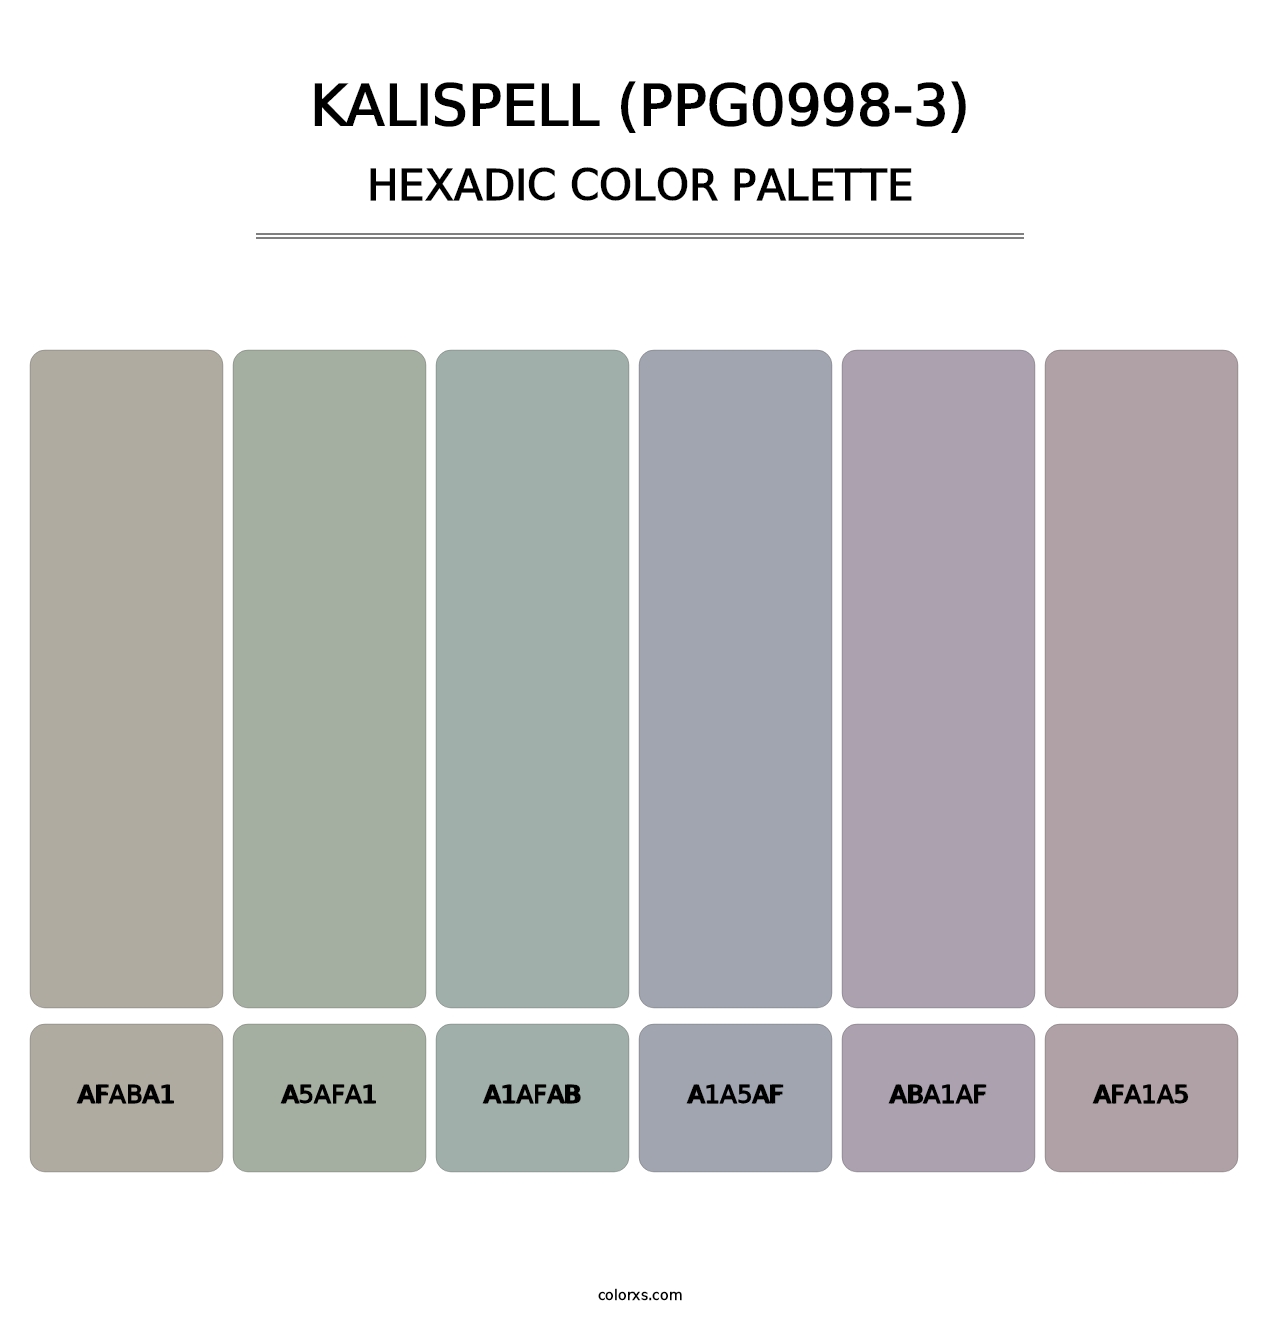 Kalispell (PPG0998-3) - Hexadic Color Palette